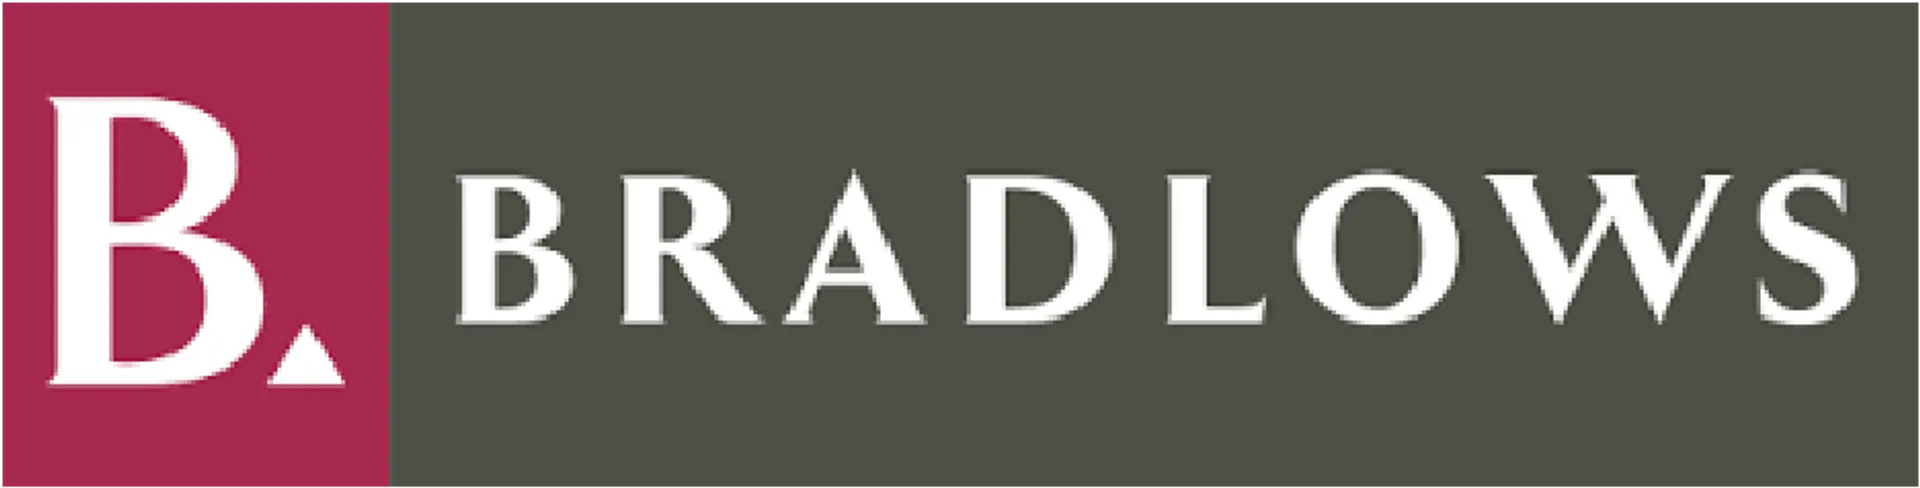 BRADLOWS logo